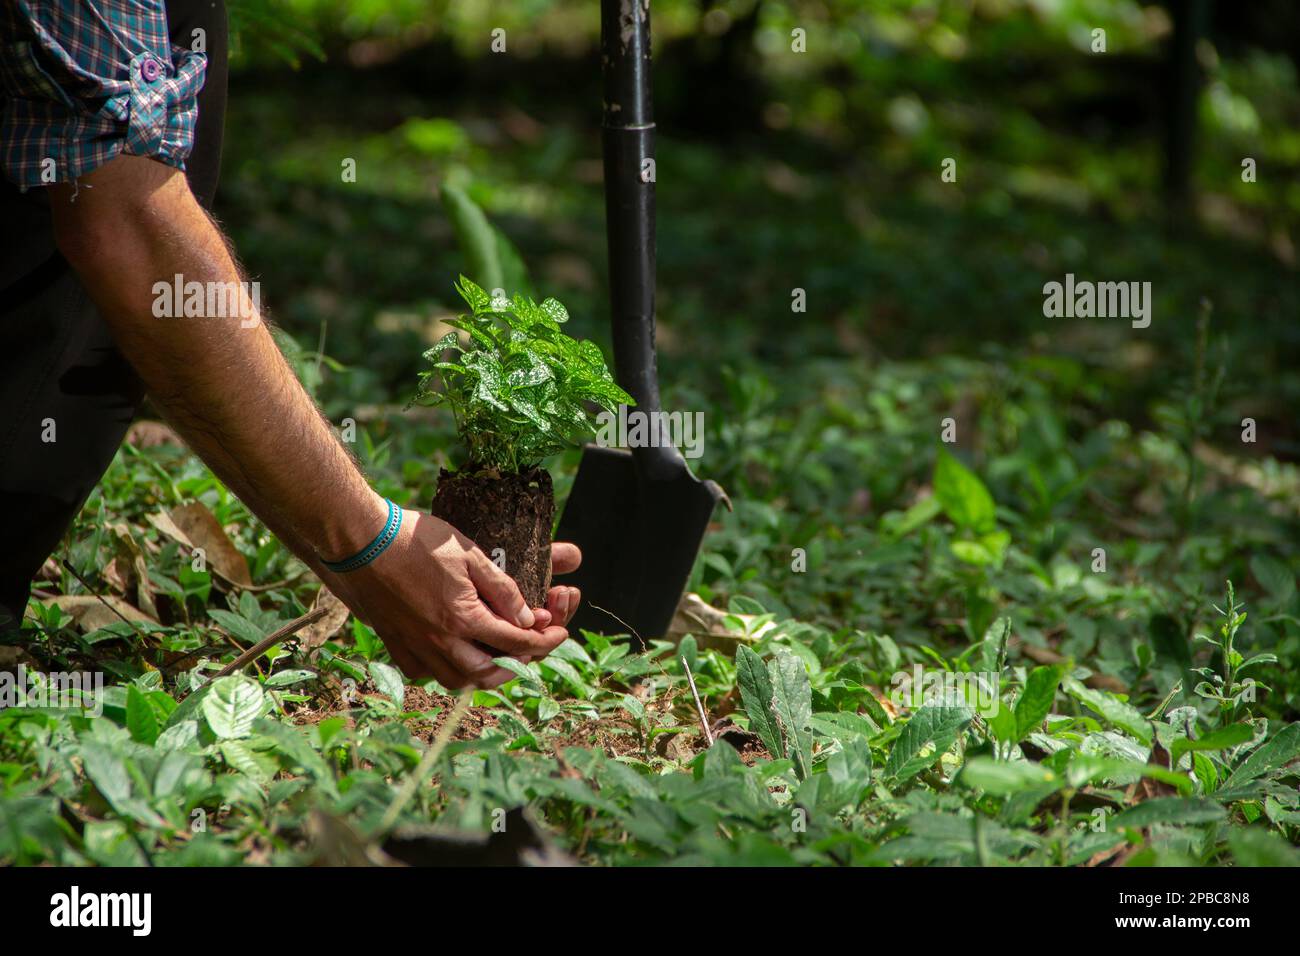 Gros plan d'un homme à genoux plantant une petite plante avec une pelle noire dans un champ vert entouré d'arbres pendant une journée ensoleillée Banque D'Images